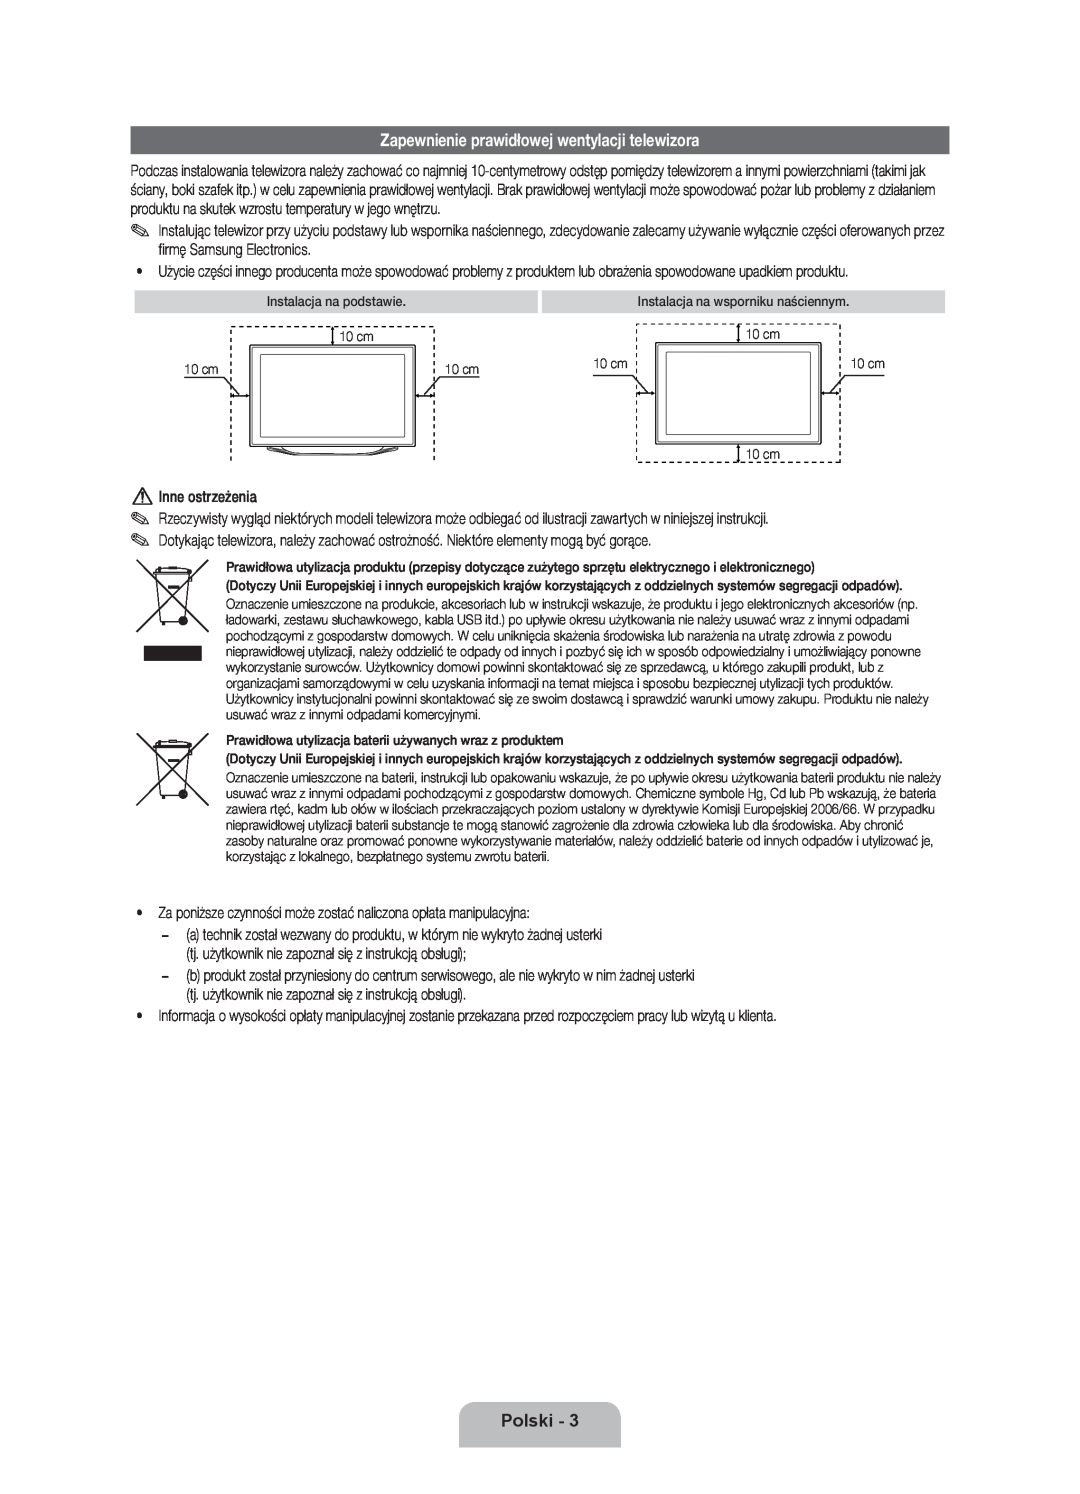 Samsung UE40ES8000SXXH, UE46ES8000SXXN manual Zapewnienie prawidłowej wentylacji telewizora, Polski, Inne ostrzeżenia 